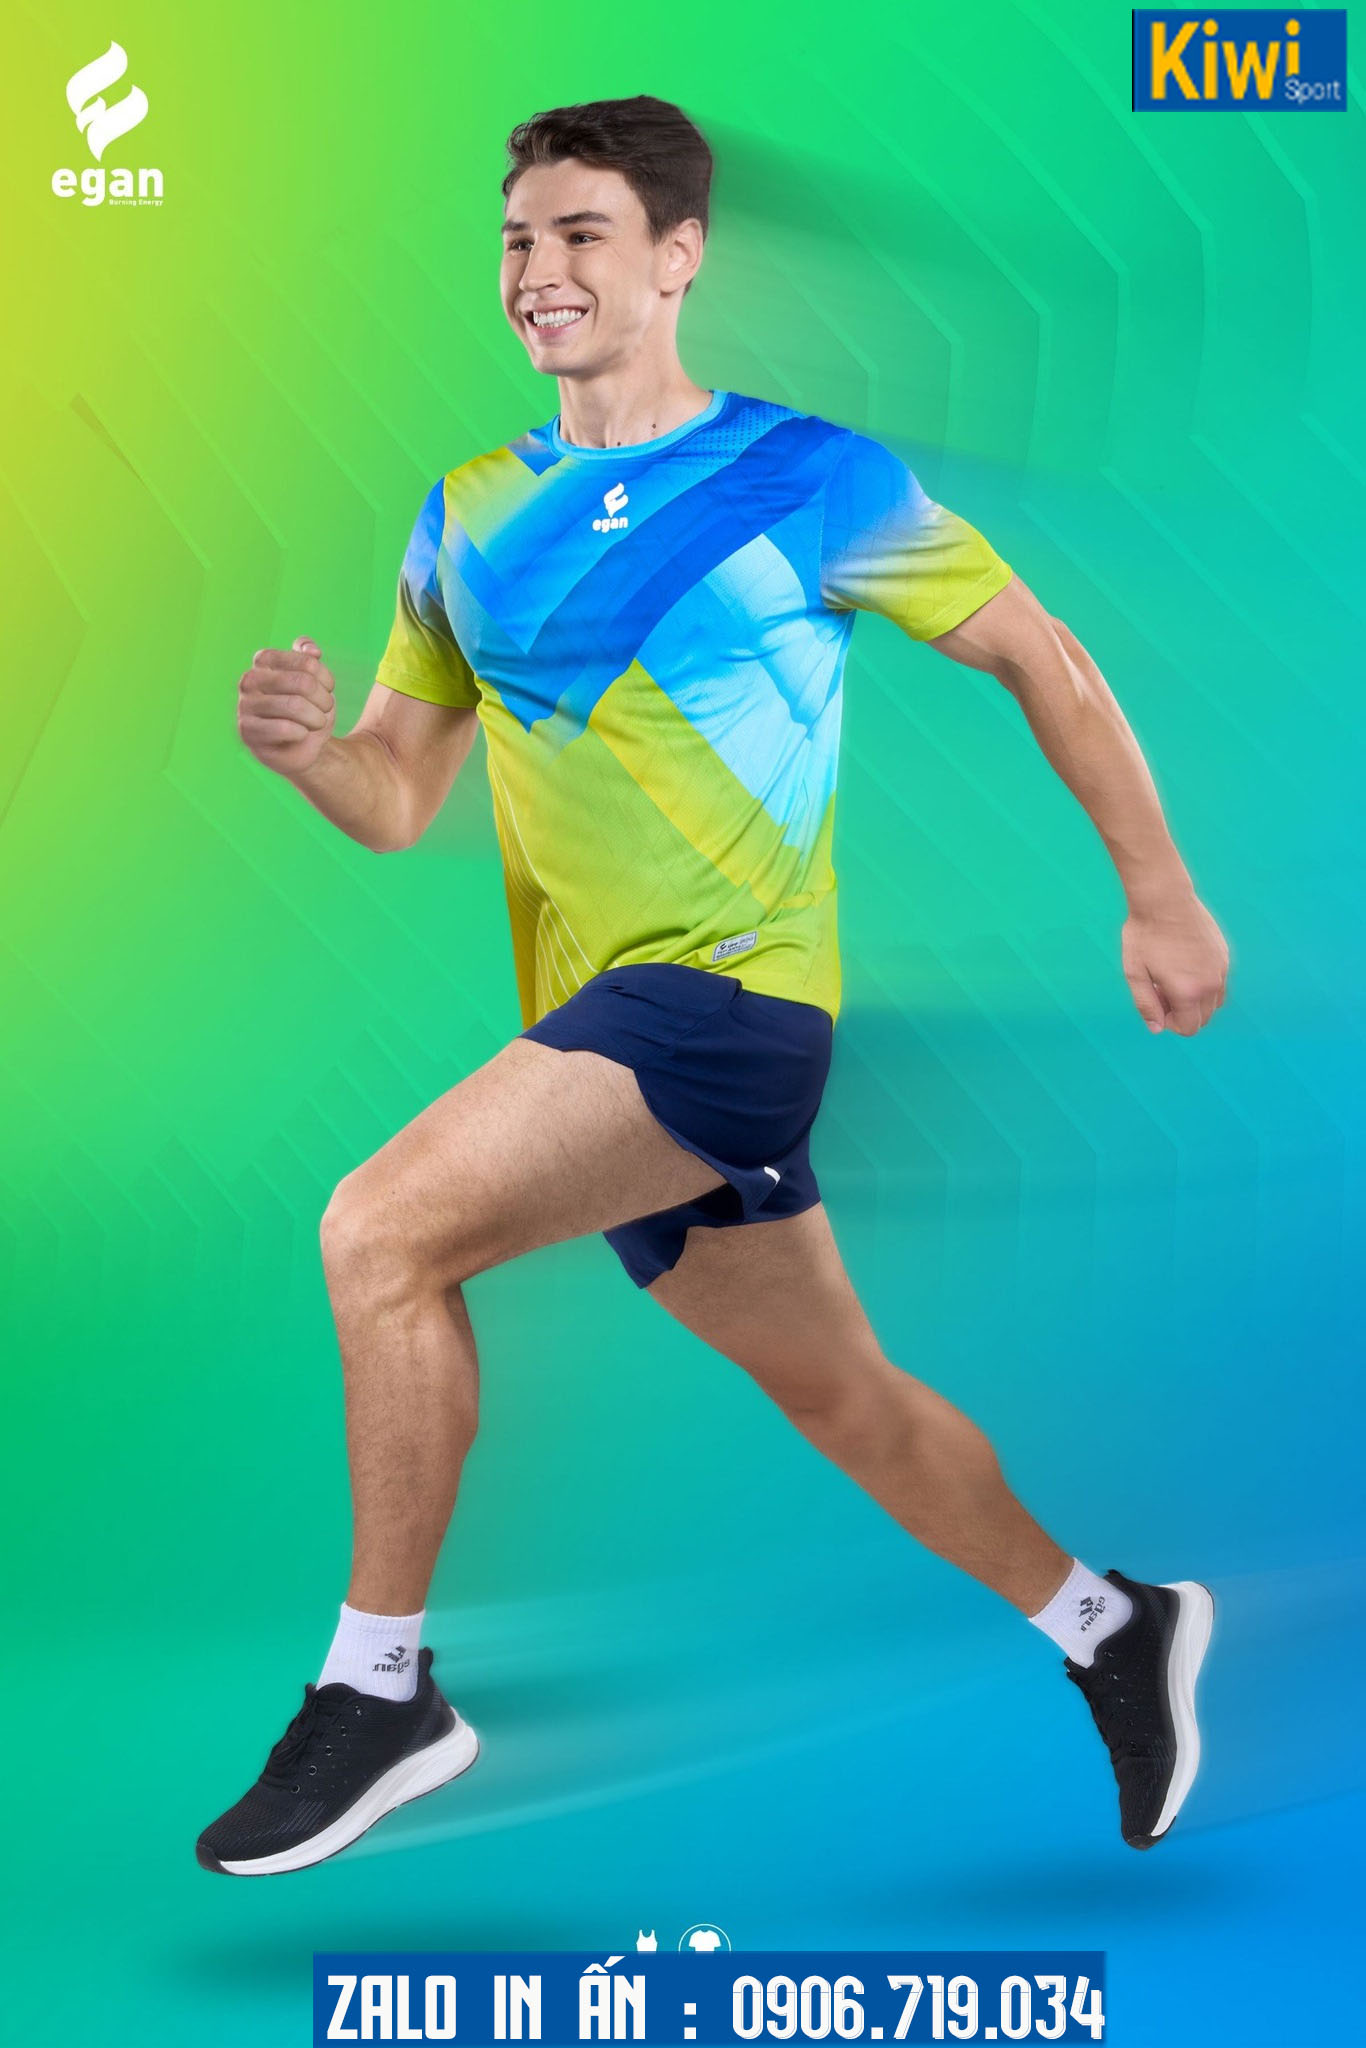 Áo chạy bộ Egan 01 màu vàng xanh trẻ trung